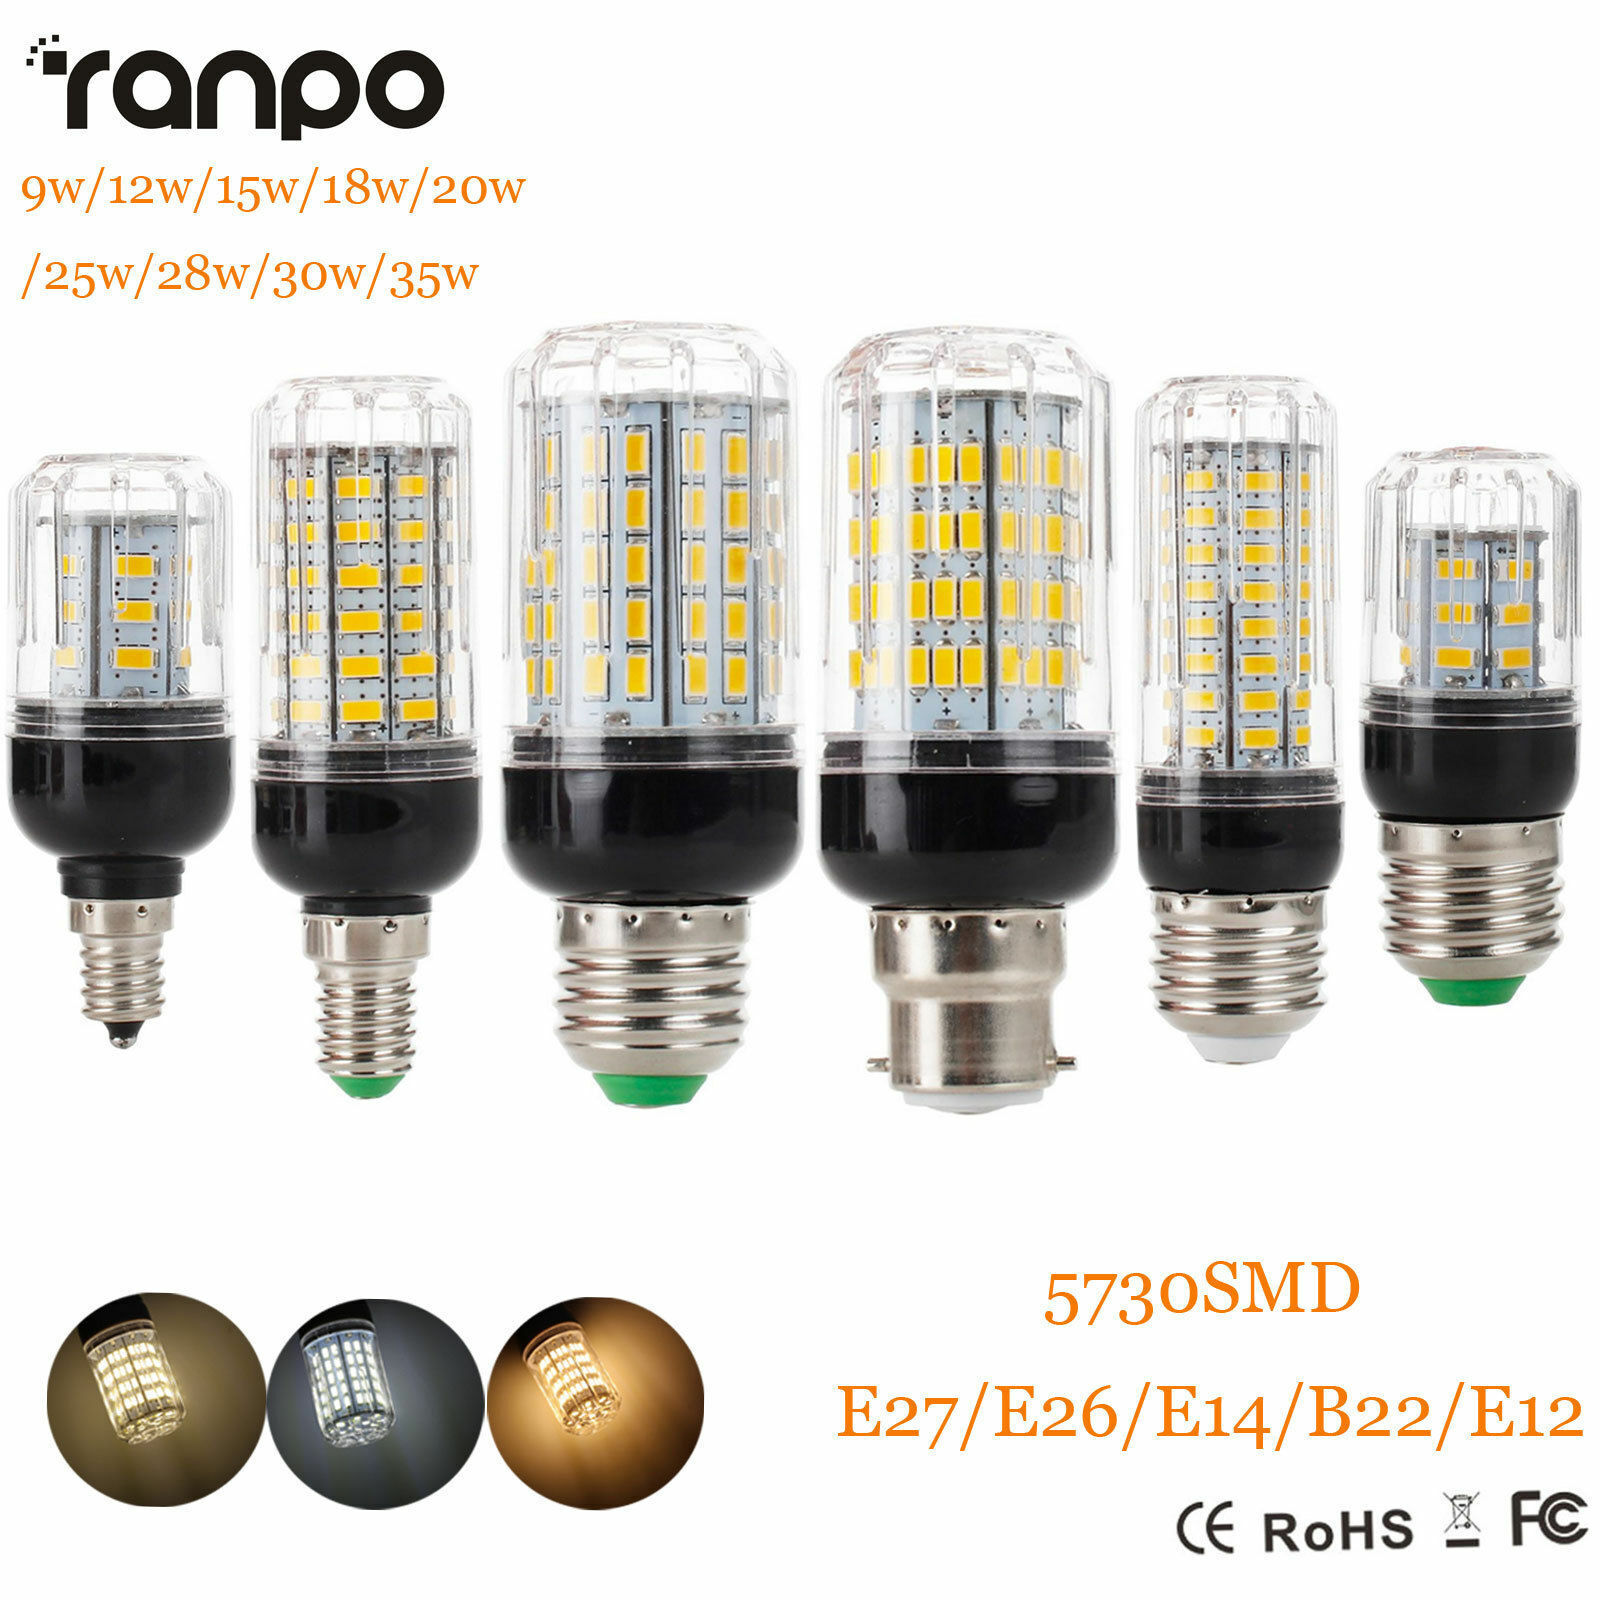 E27 E14 B22 LED Corn Light Bulbs 5730 SMD 9W 12W 15W 20W 25W 30W 35W White Lamp